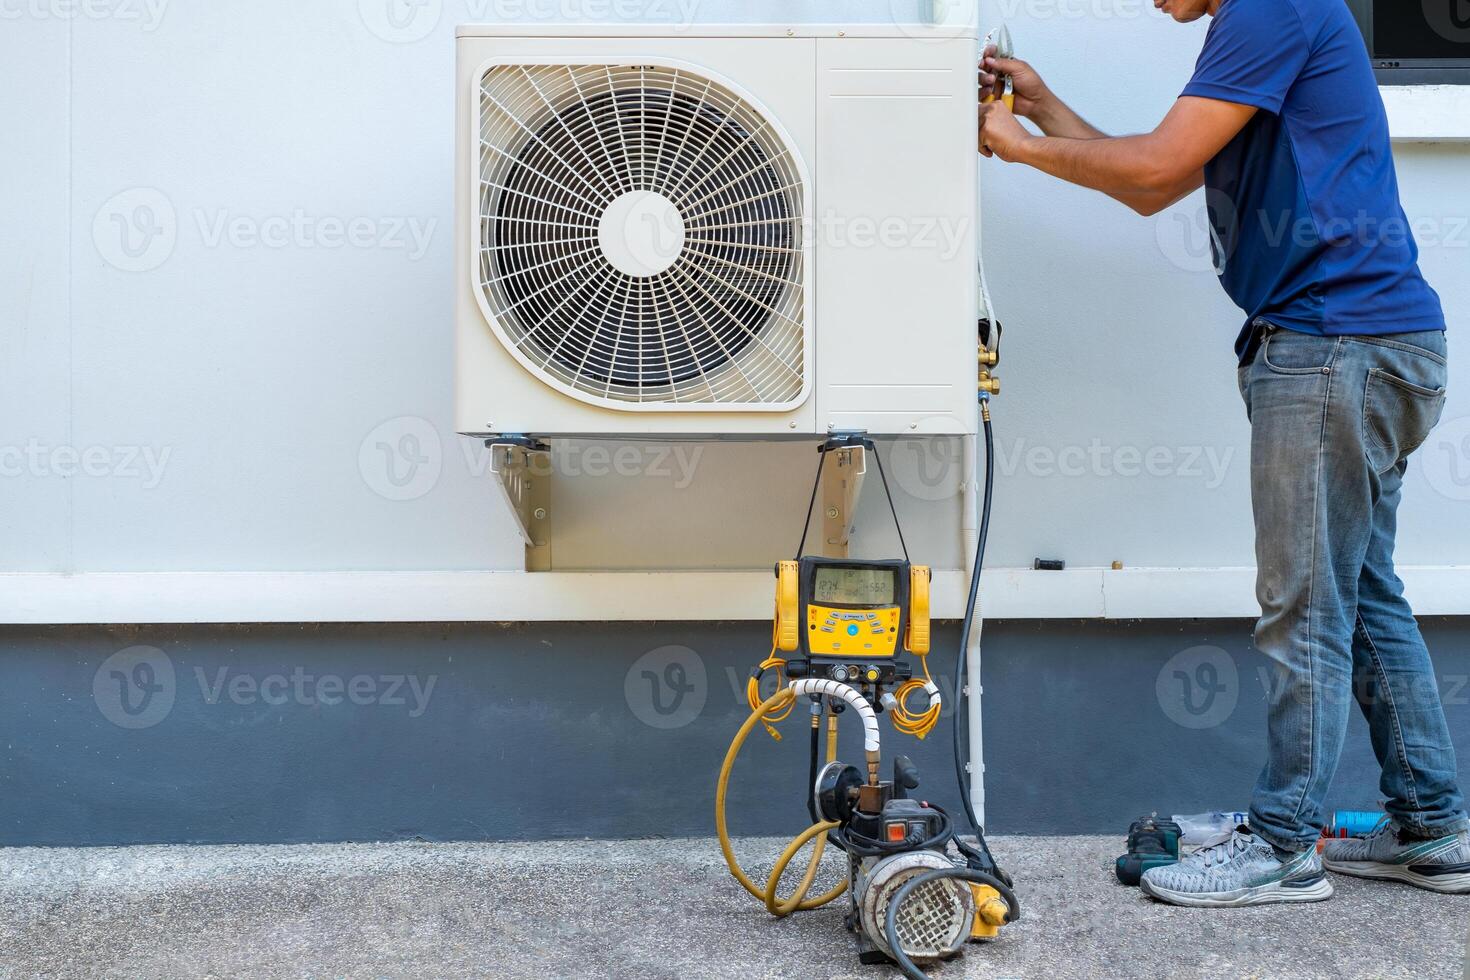 mannetje technicus installeren buitenshuis eenheid van lucht conditioner naar koel de huishouden in de zomer. lucht compressor, elektronisch, heet zomer, hoog temperatuur, tropisch landen foto